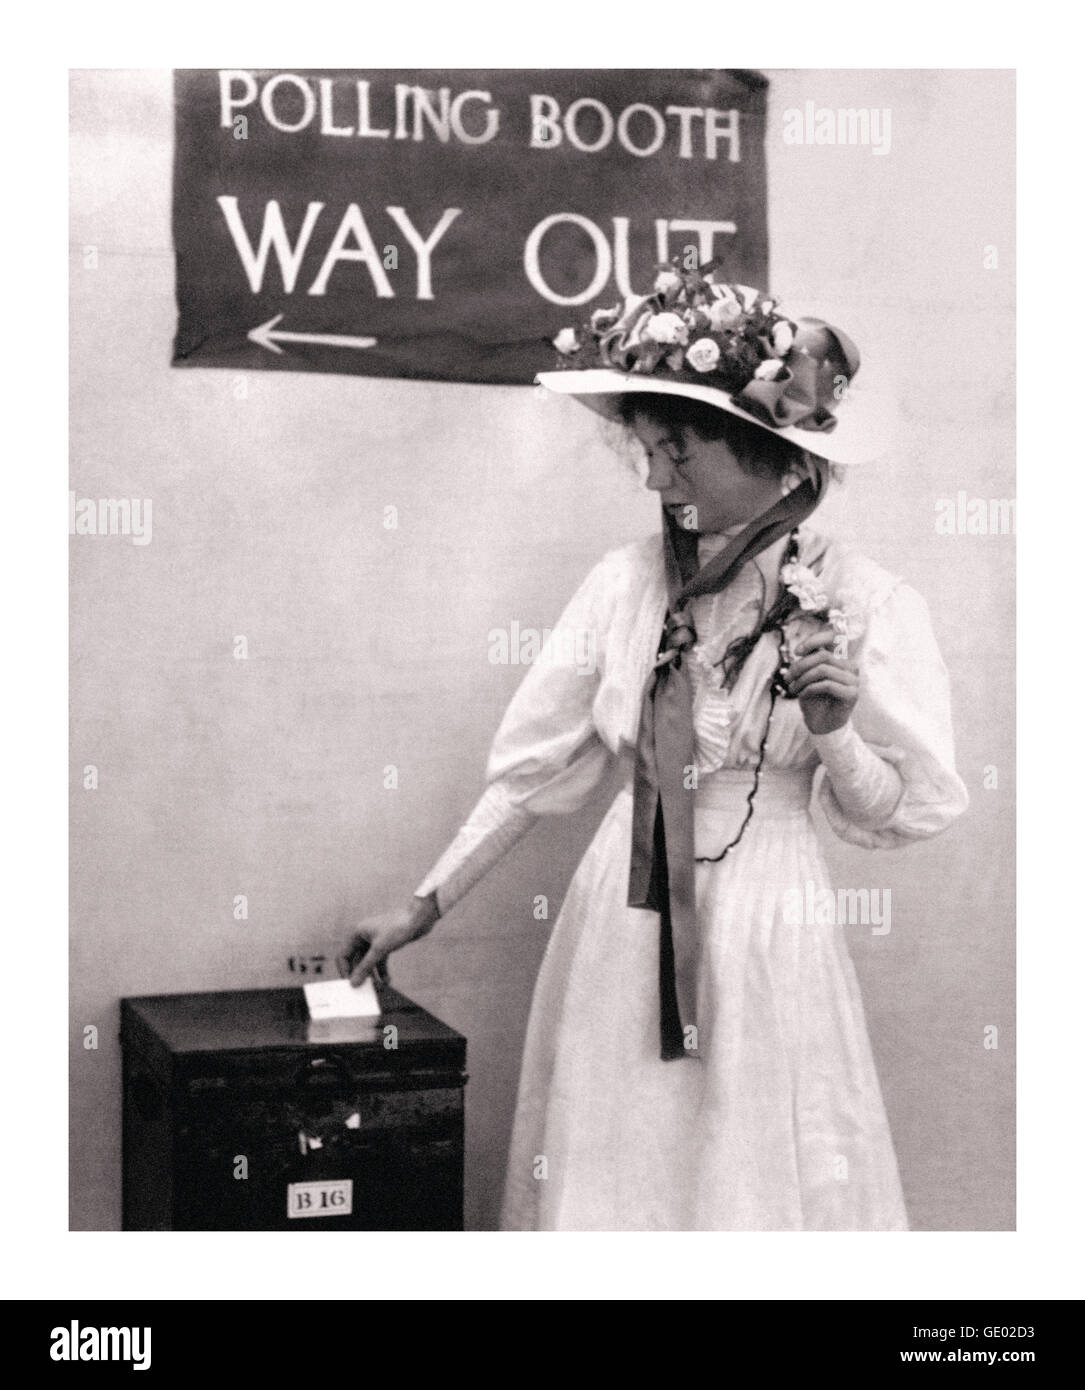 Movimiento sufragario Christabel Pankhurst en un puesto de votación del Reino Unido alrededor de 1910. Era hija de Emmeline Pankhurst y activista política del movimiento sufragista que obtuvo votos para las mujeres. Cofundadora de la unión social y política de mujeres WSPU Foto de stock